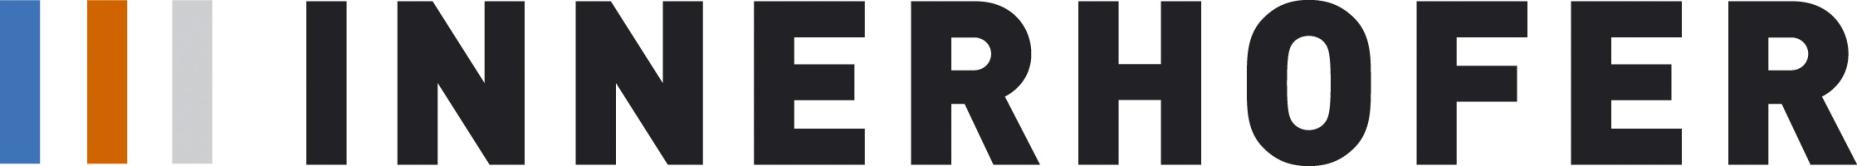 Innerhofer Logo